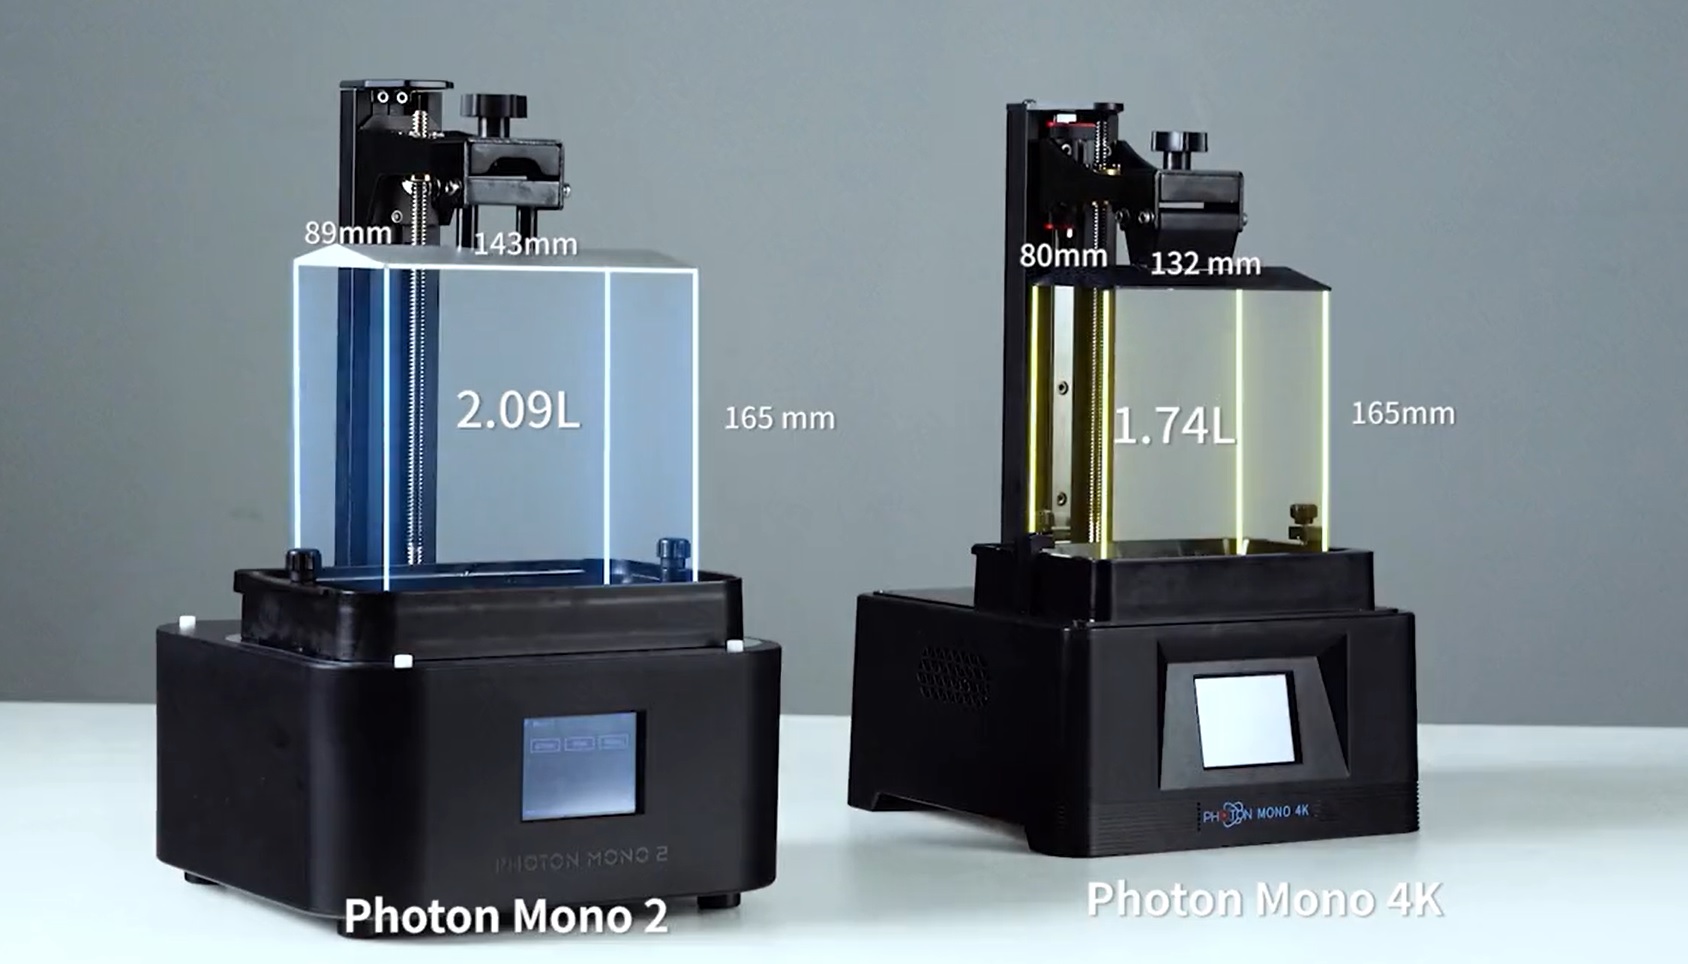 New Anycubic Photon Mono2 vs Photon Mono 4K